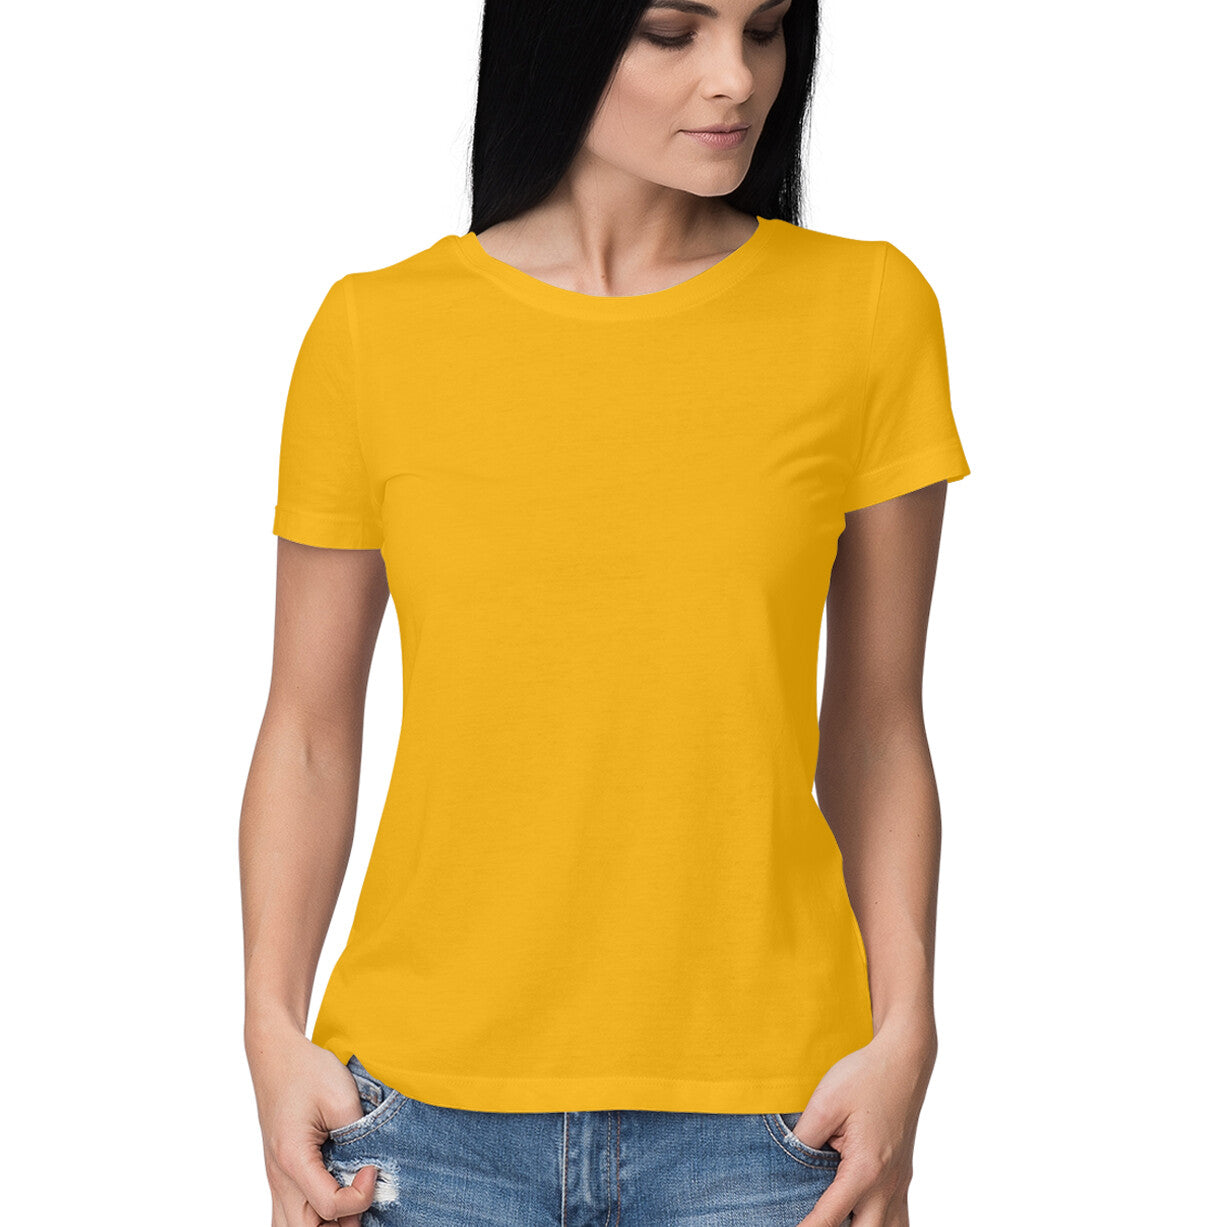 Get Better - Women's Golden Yellow Tshirt (Back Print)